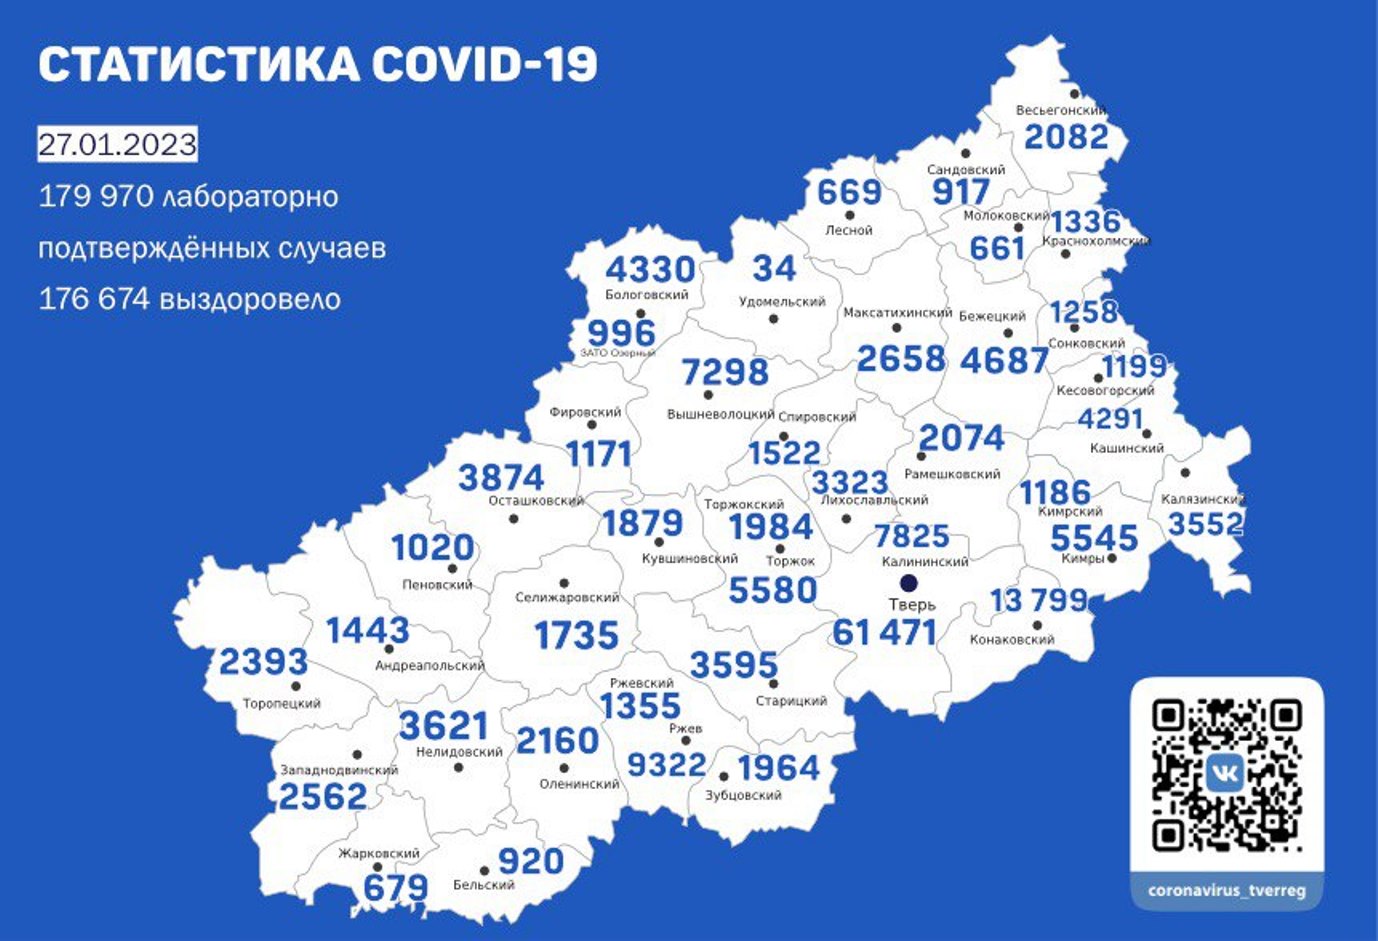 Заболеваемость растет: на 33 увеличилось число зараженных коронавирусом в Тверской области за сутки